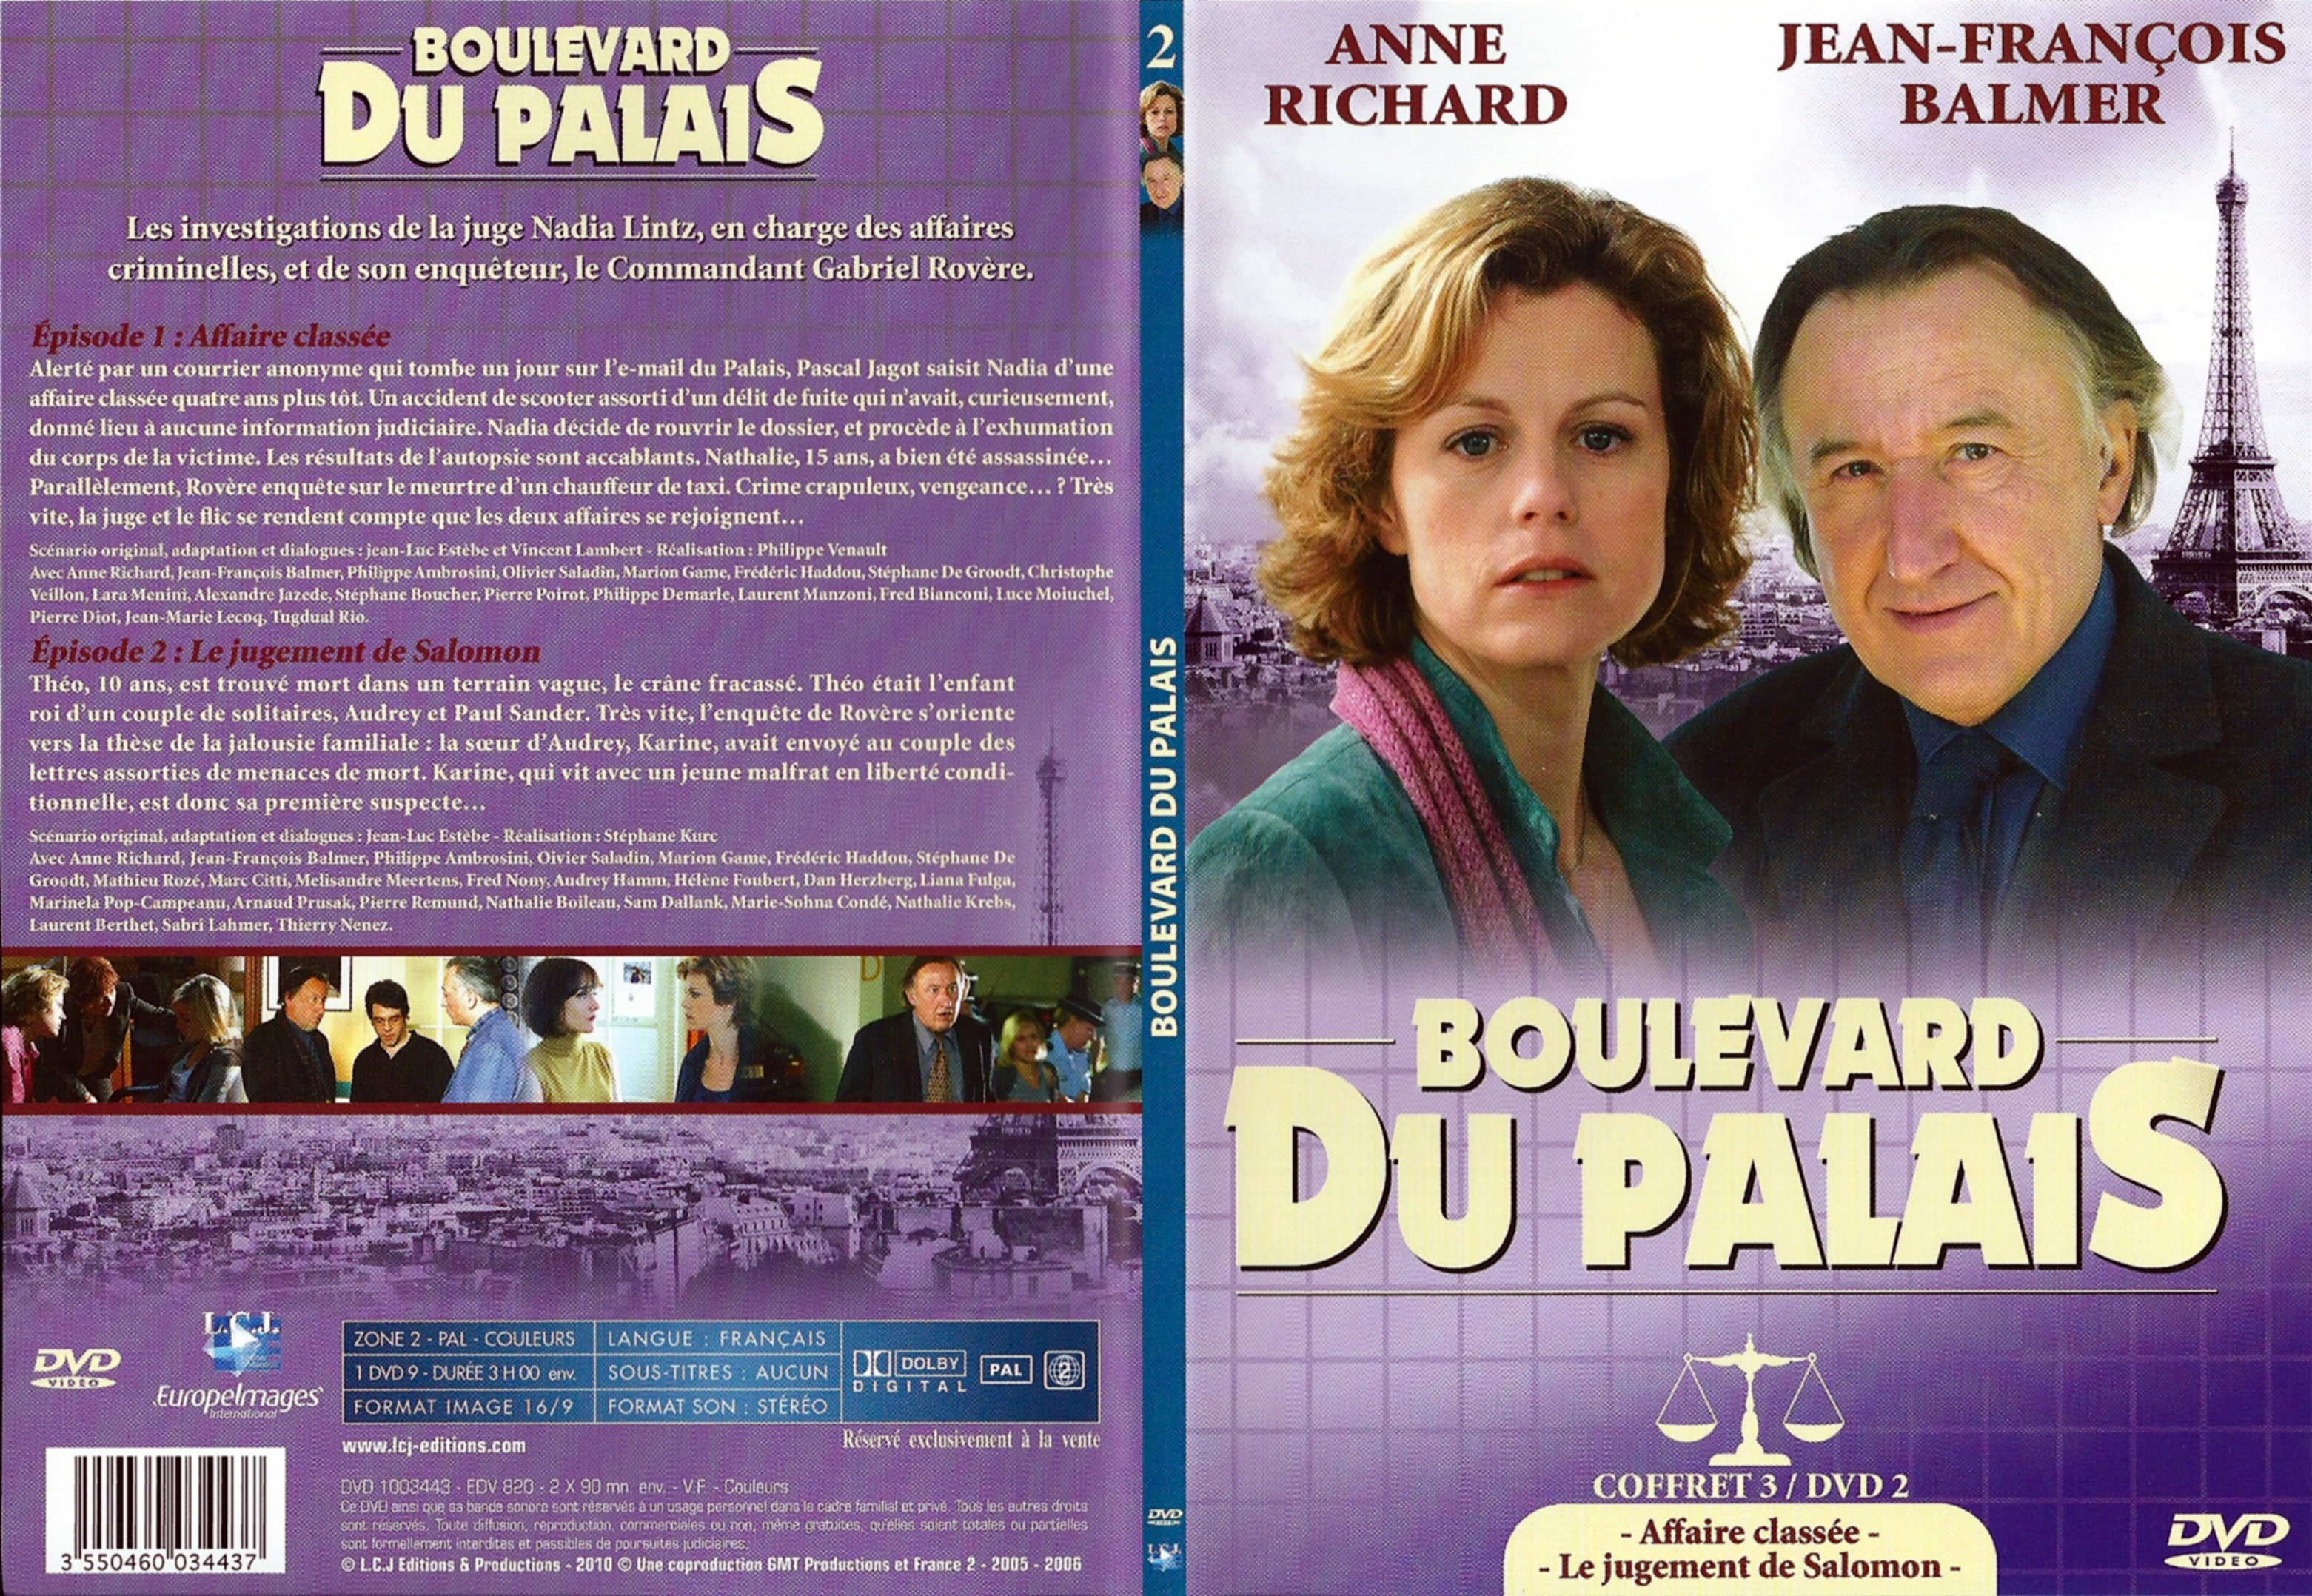 Jaquette DVD Boulevard du palais Saison 3 DVD 2